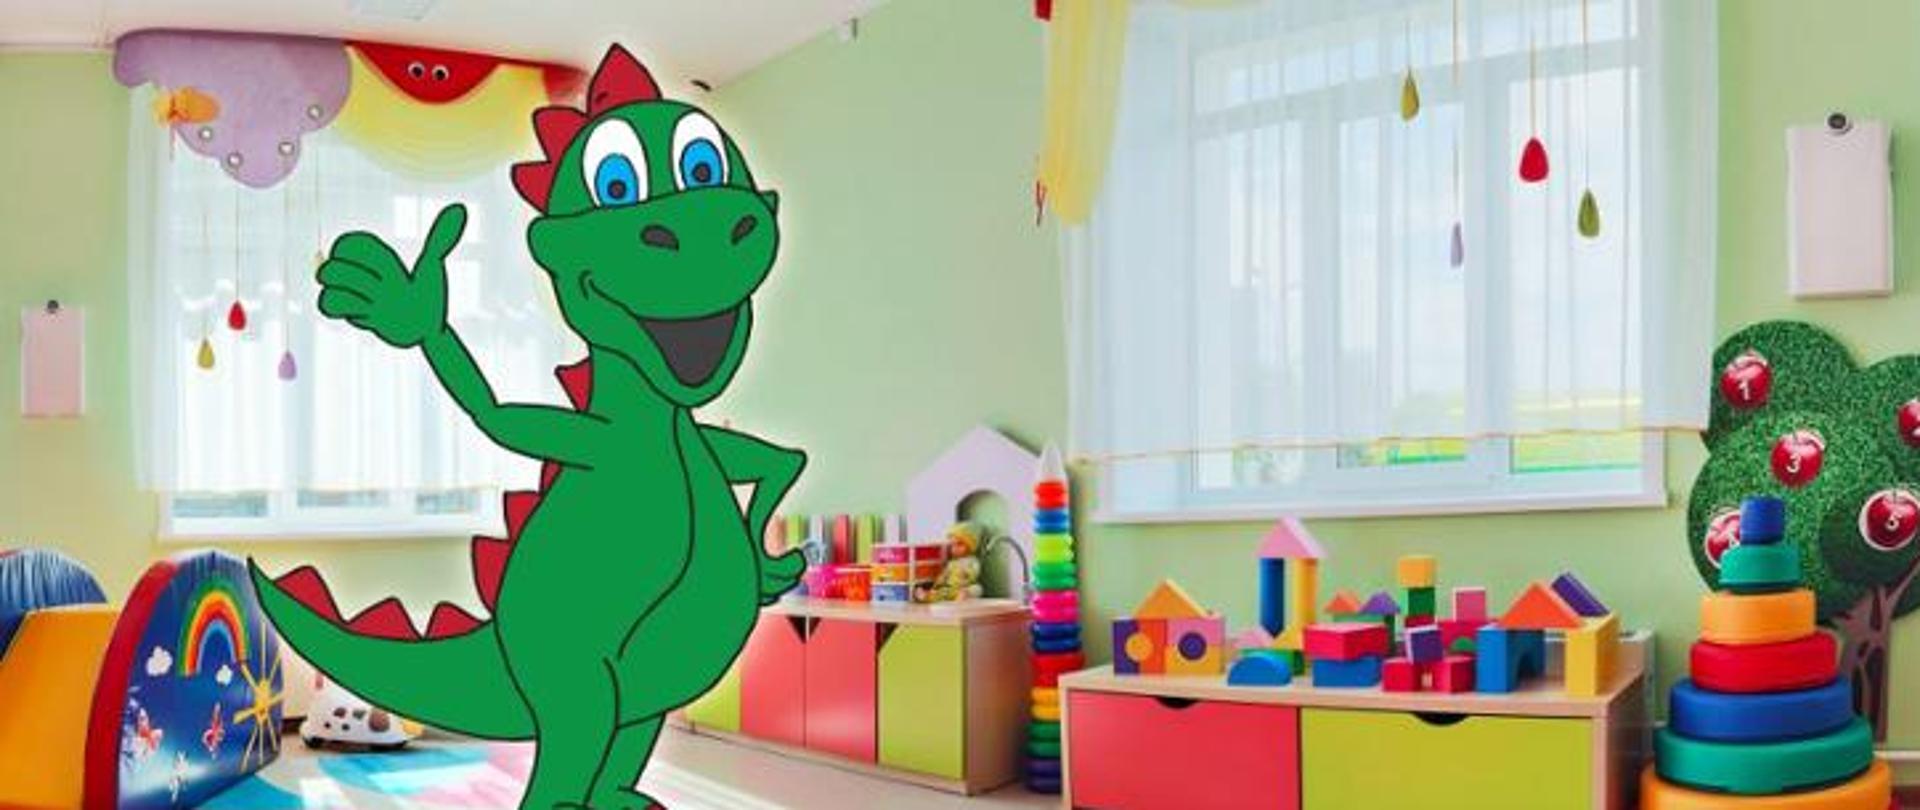 Na zdjęciu widać salę przedszkolną z kolorowymi zabawkami. Na pierwszym planie znajduje się uśmiechnięty zielony dinozaur. 